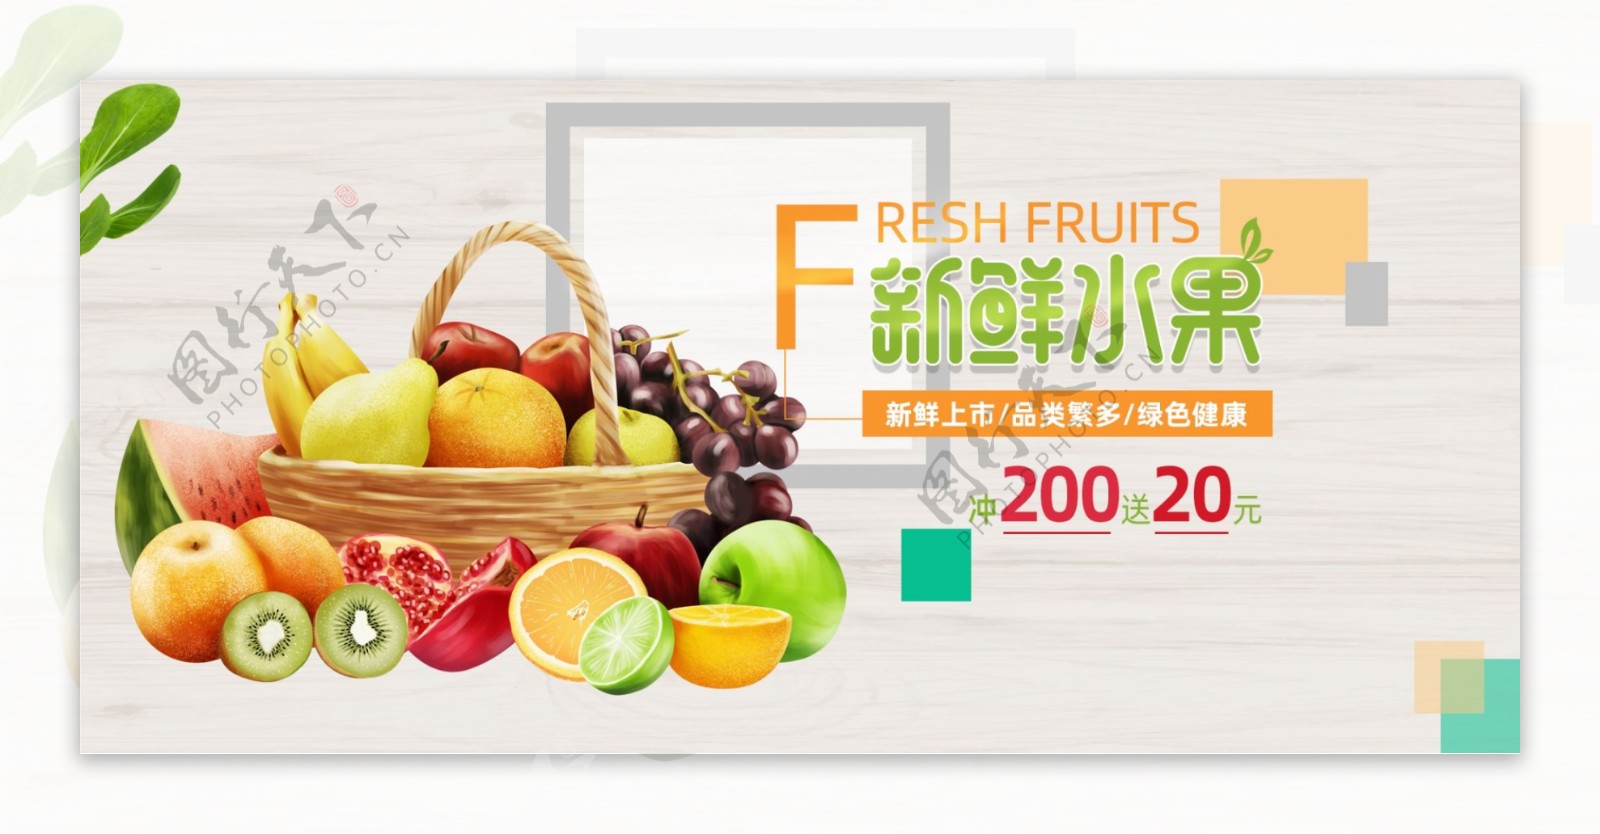 水果广告